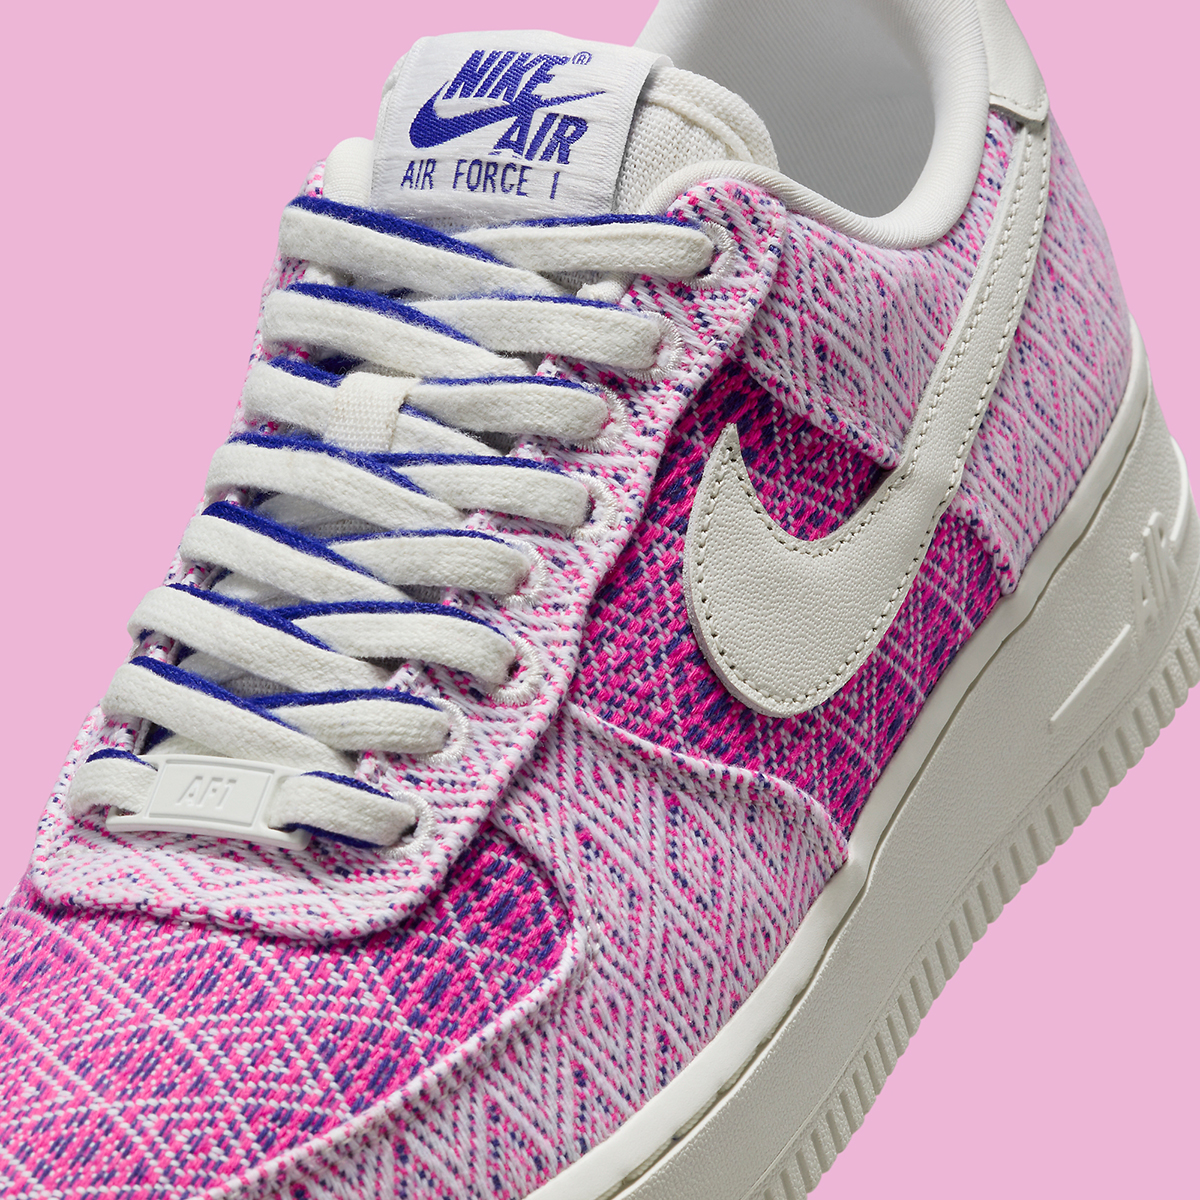 leopard sneakers nike free run pink floyd youtube Pink Tapestry Hf5128 902 6